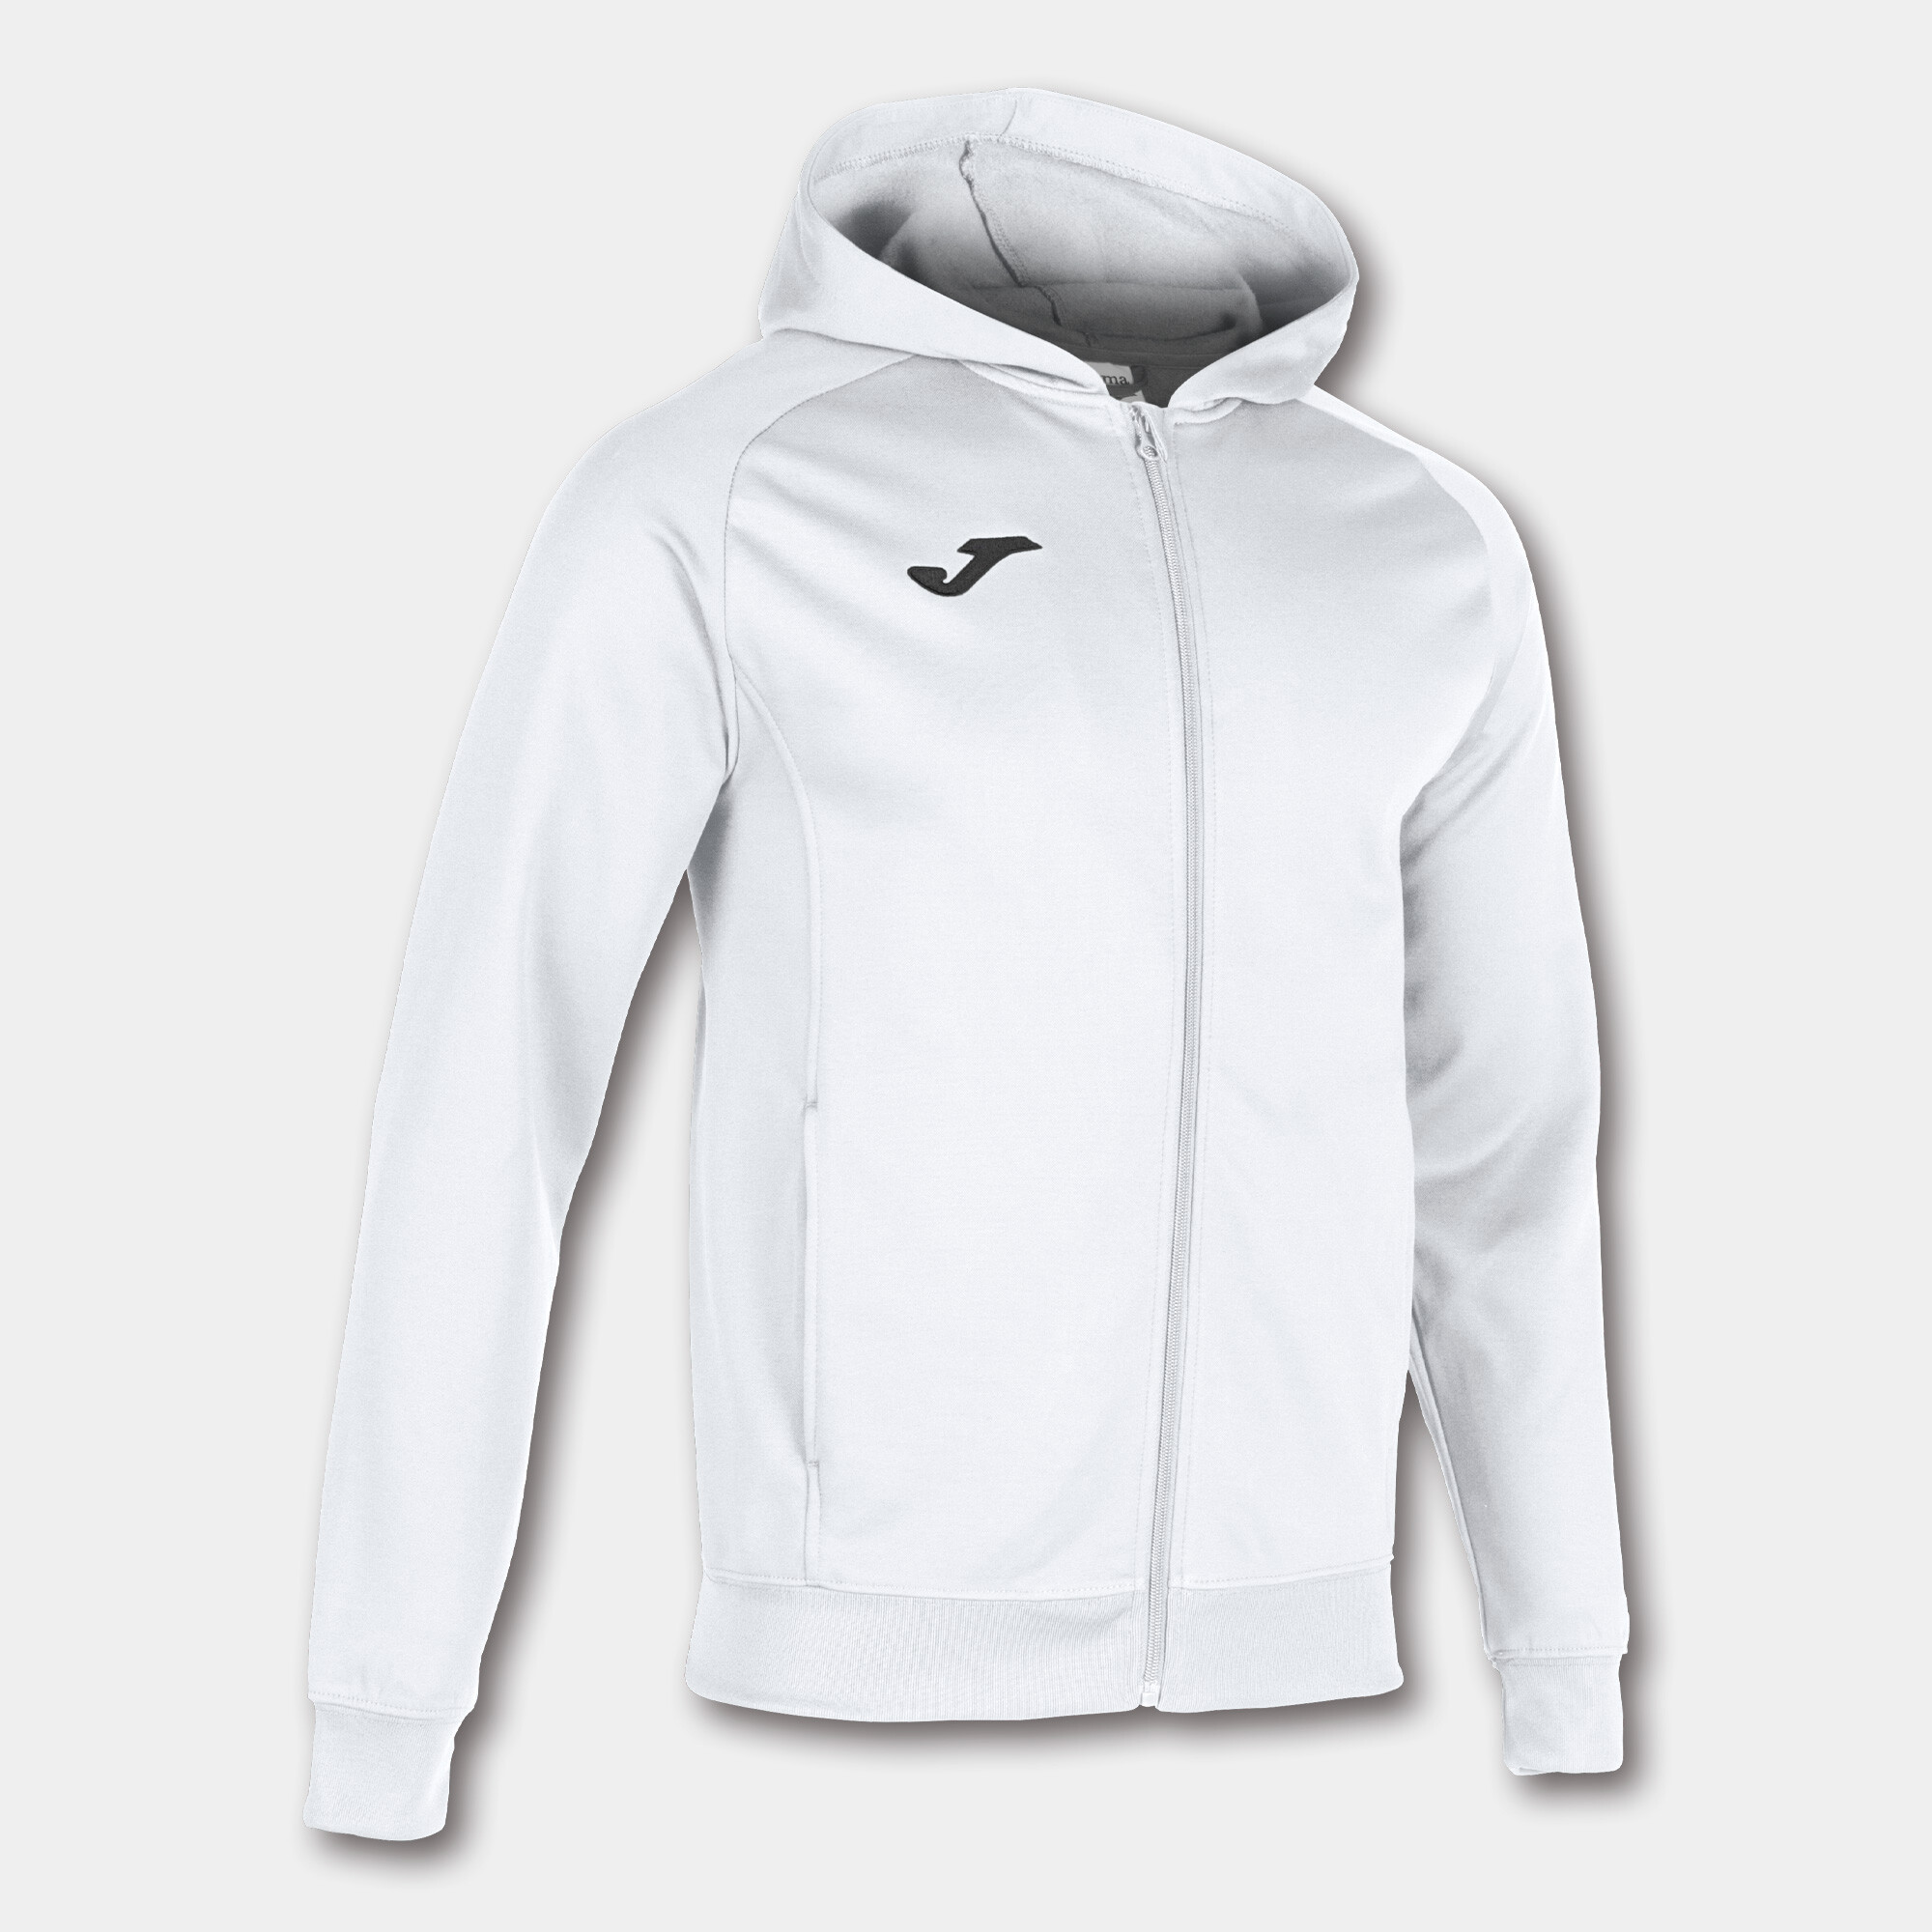 Pánská/chlapecká sportovní bunda Joma Menfis White